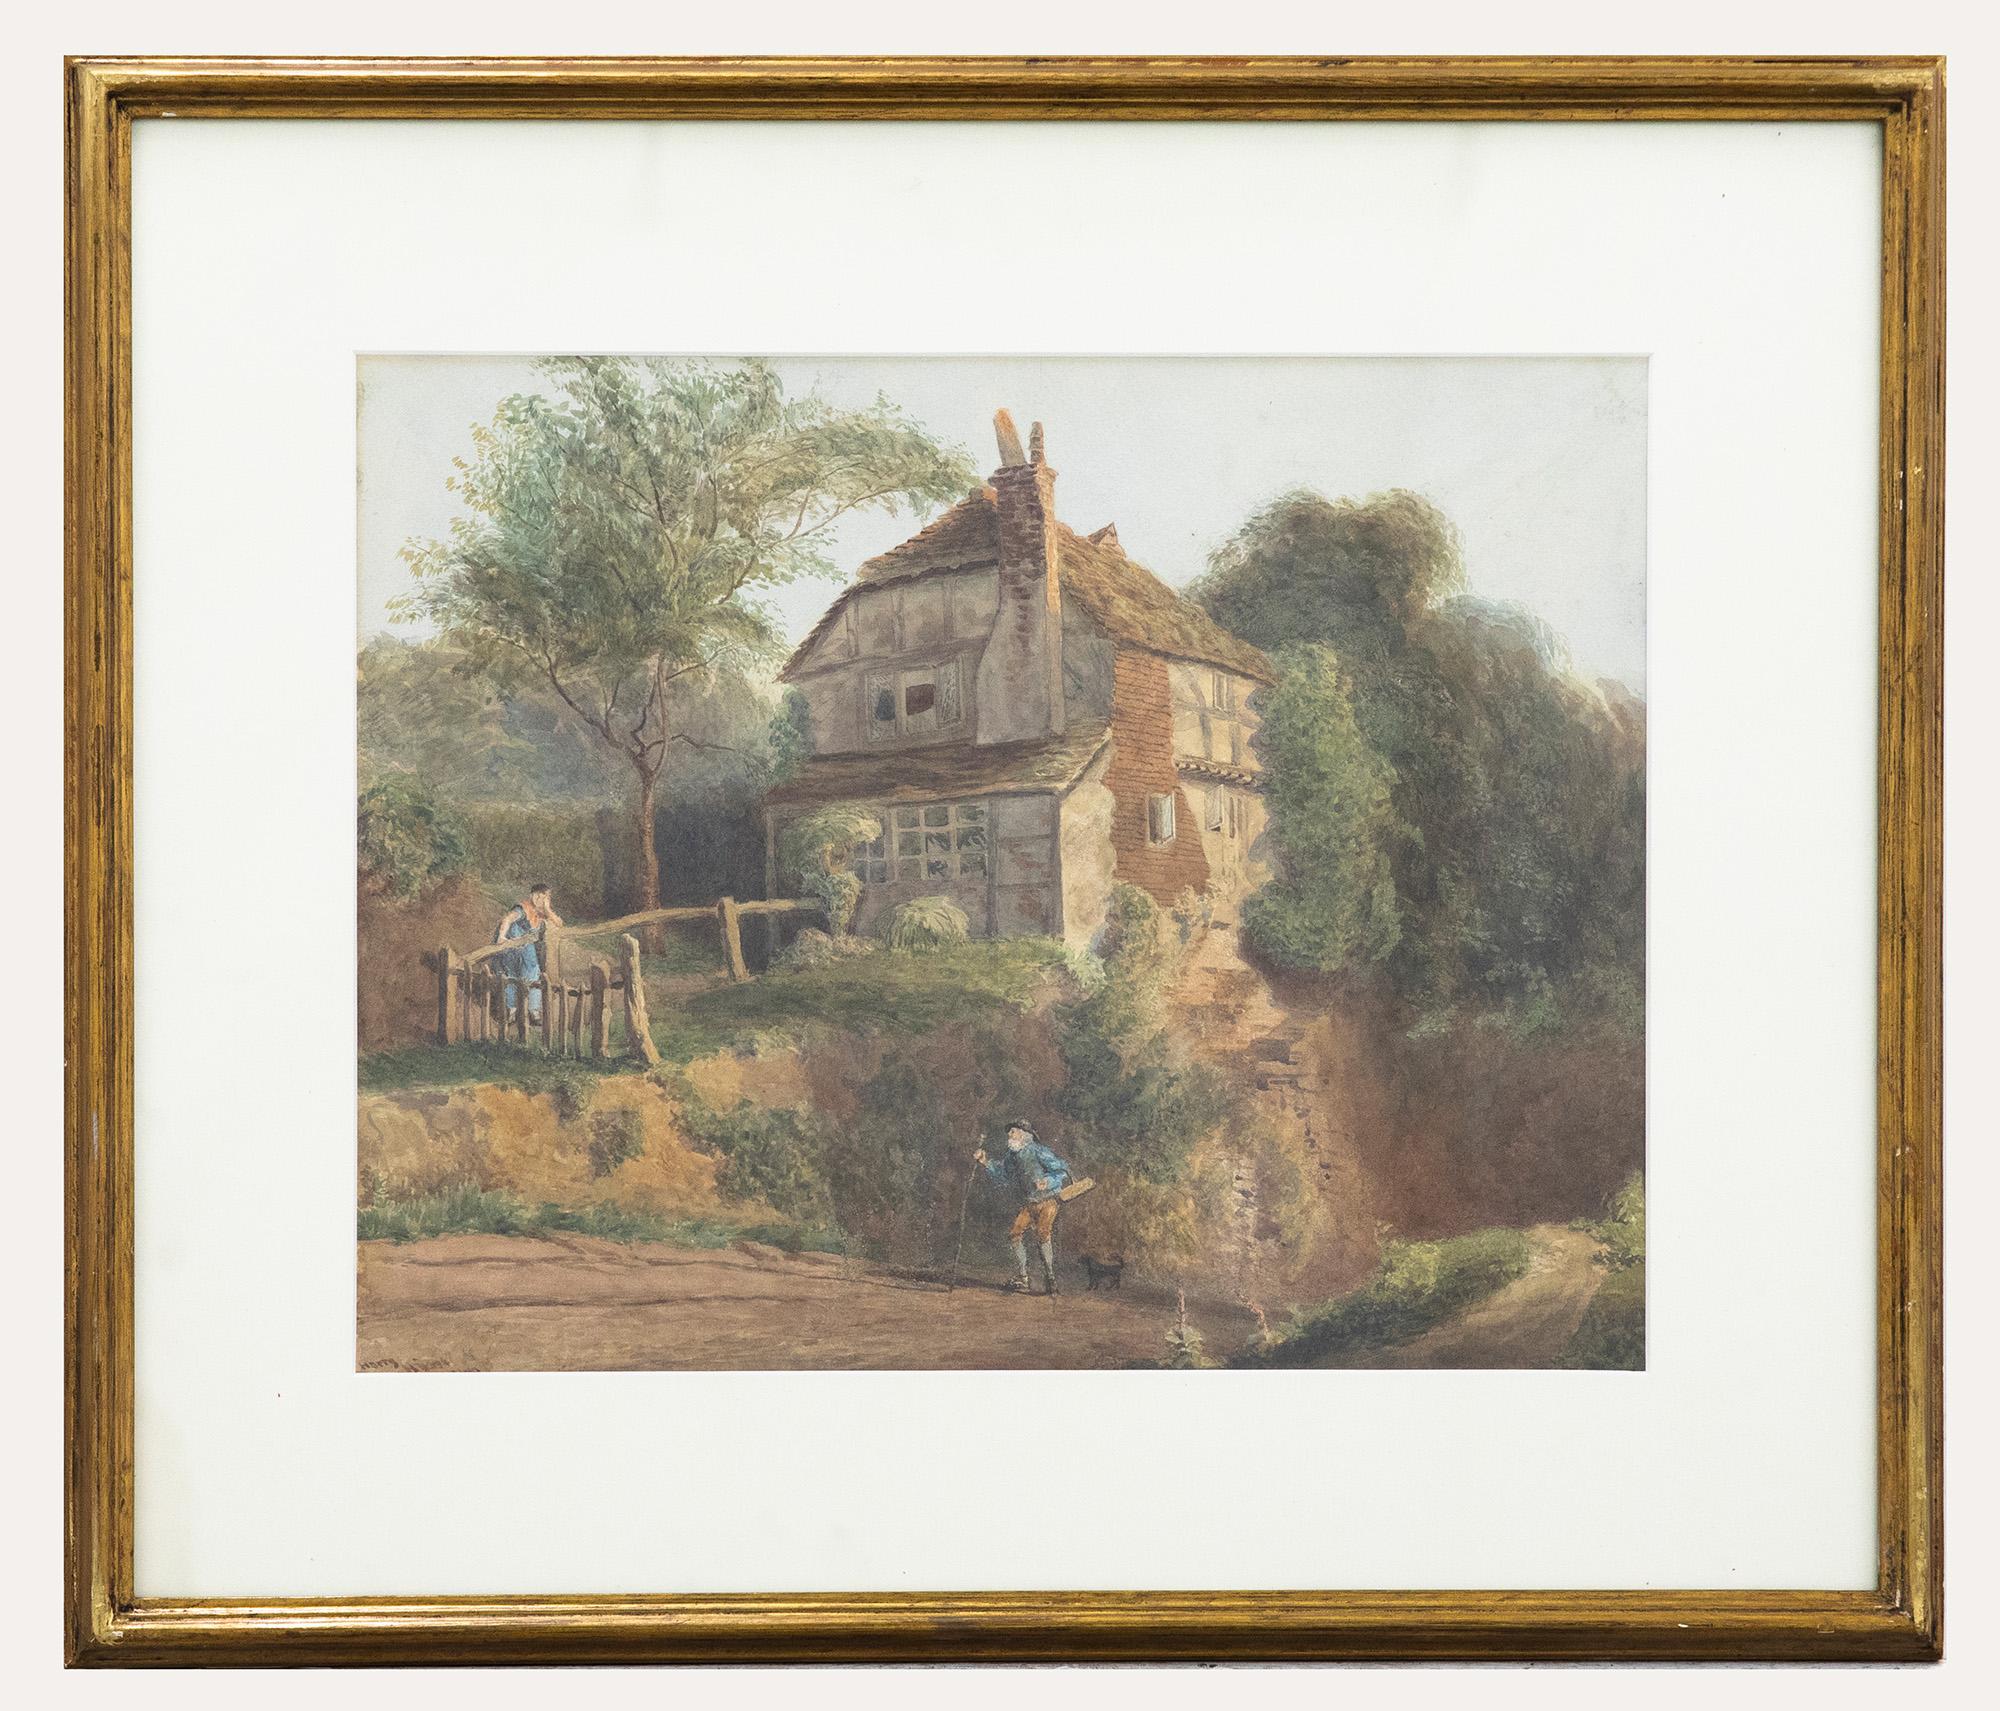 Cette aquarelle humoristique de Henry George Hine I+I (1811-1895) représente un homme âgé rentrant chez lui et retrouvant sa femme mécontente. L'homme a l'air joyeux dans sa démarche avant d'apercevoir sa moitié qui se repose avec frustration sur la